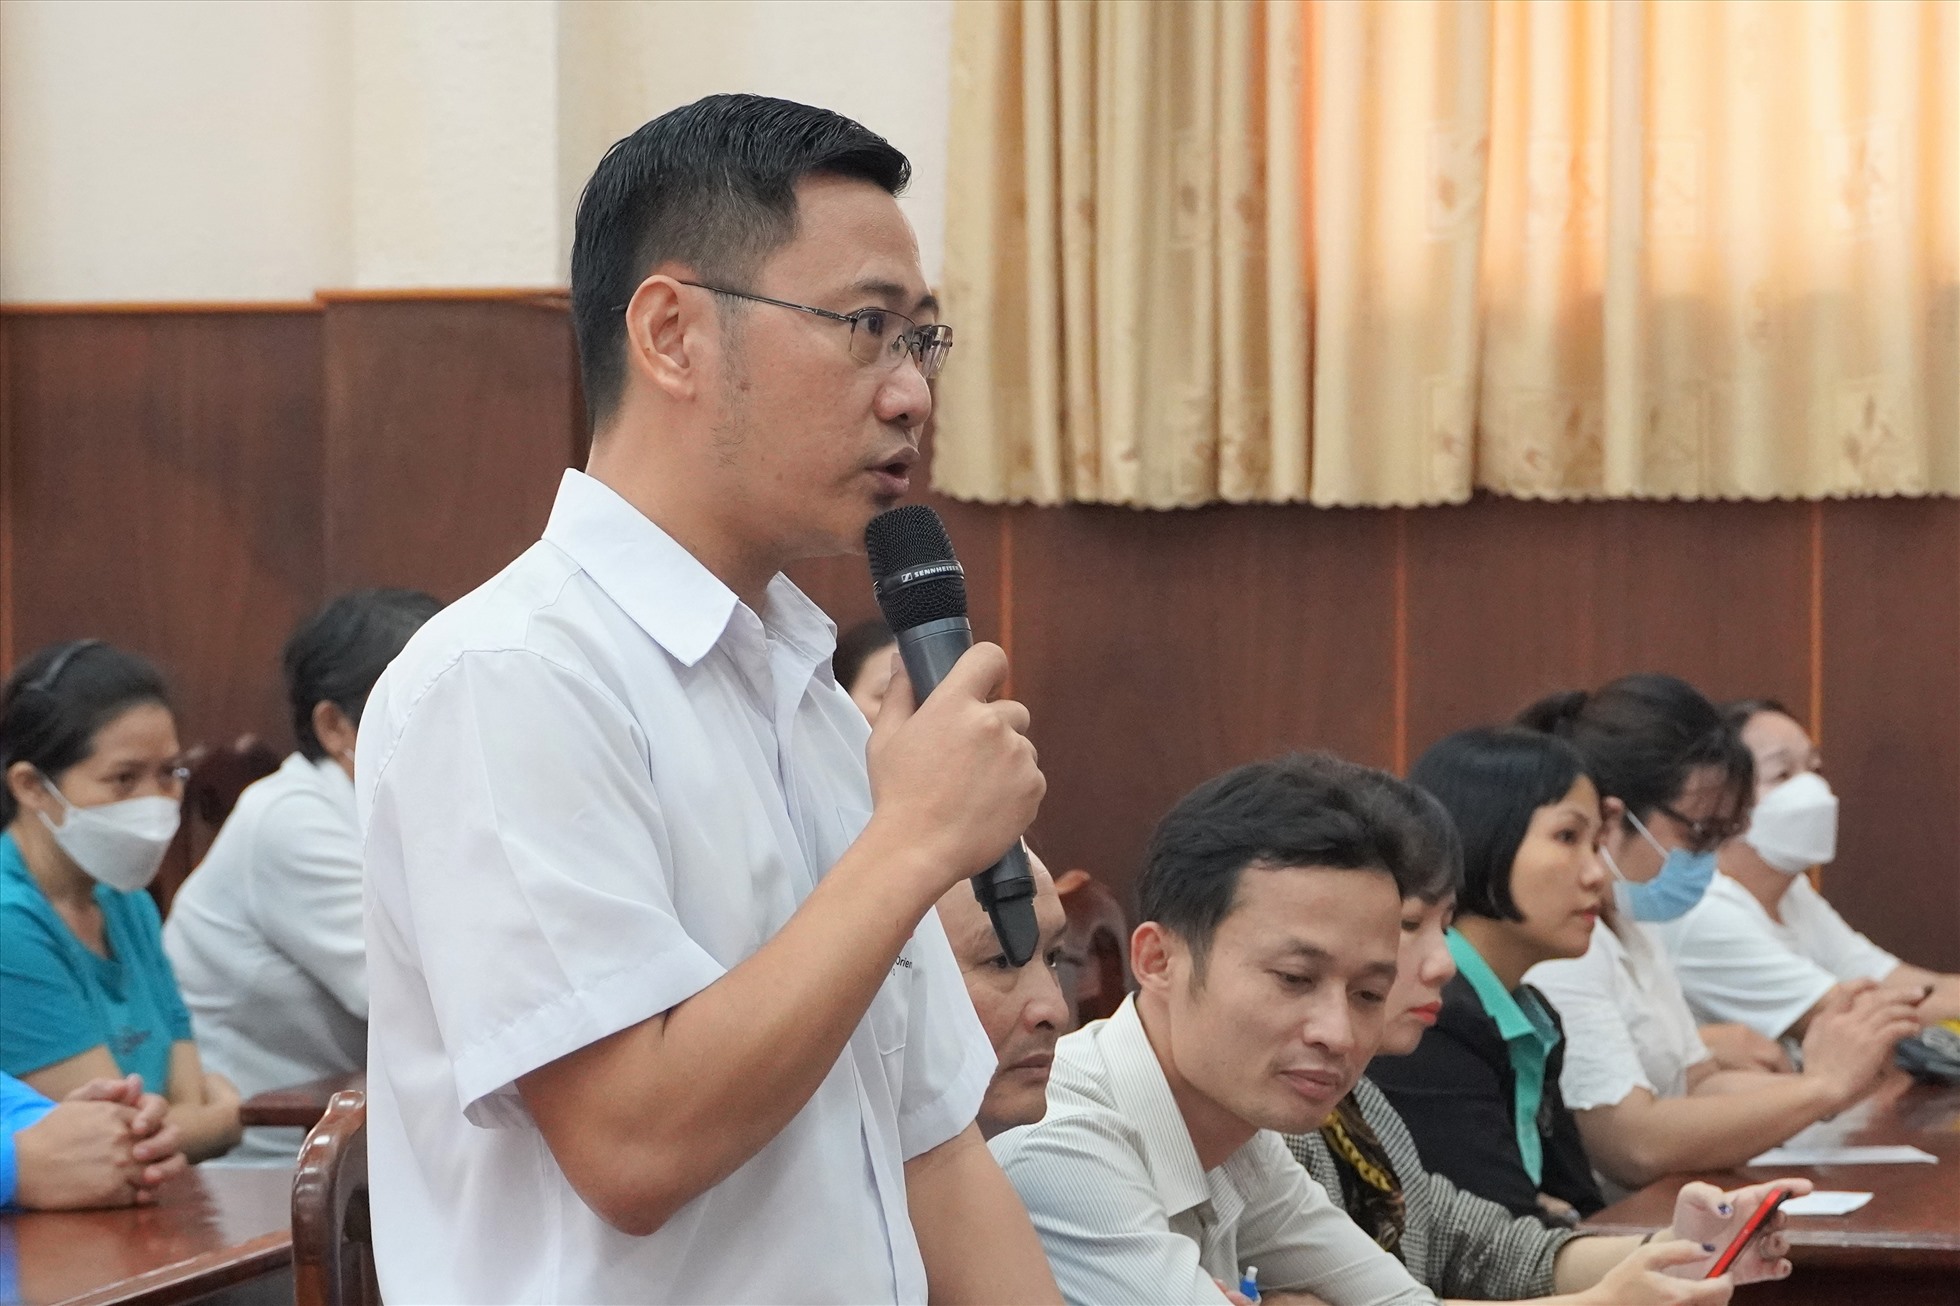 Ông Đoàn Văn Diên - Công ty TNHH Đông Phương Vũng Tàu nêu ý kiến về vấn đề chỗ ở ổn định, thuê/mua nhà ở xã hội, nhà ở công nhân cho người lao động và tái tạo sức lao động. Ảnh